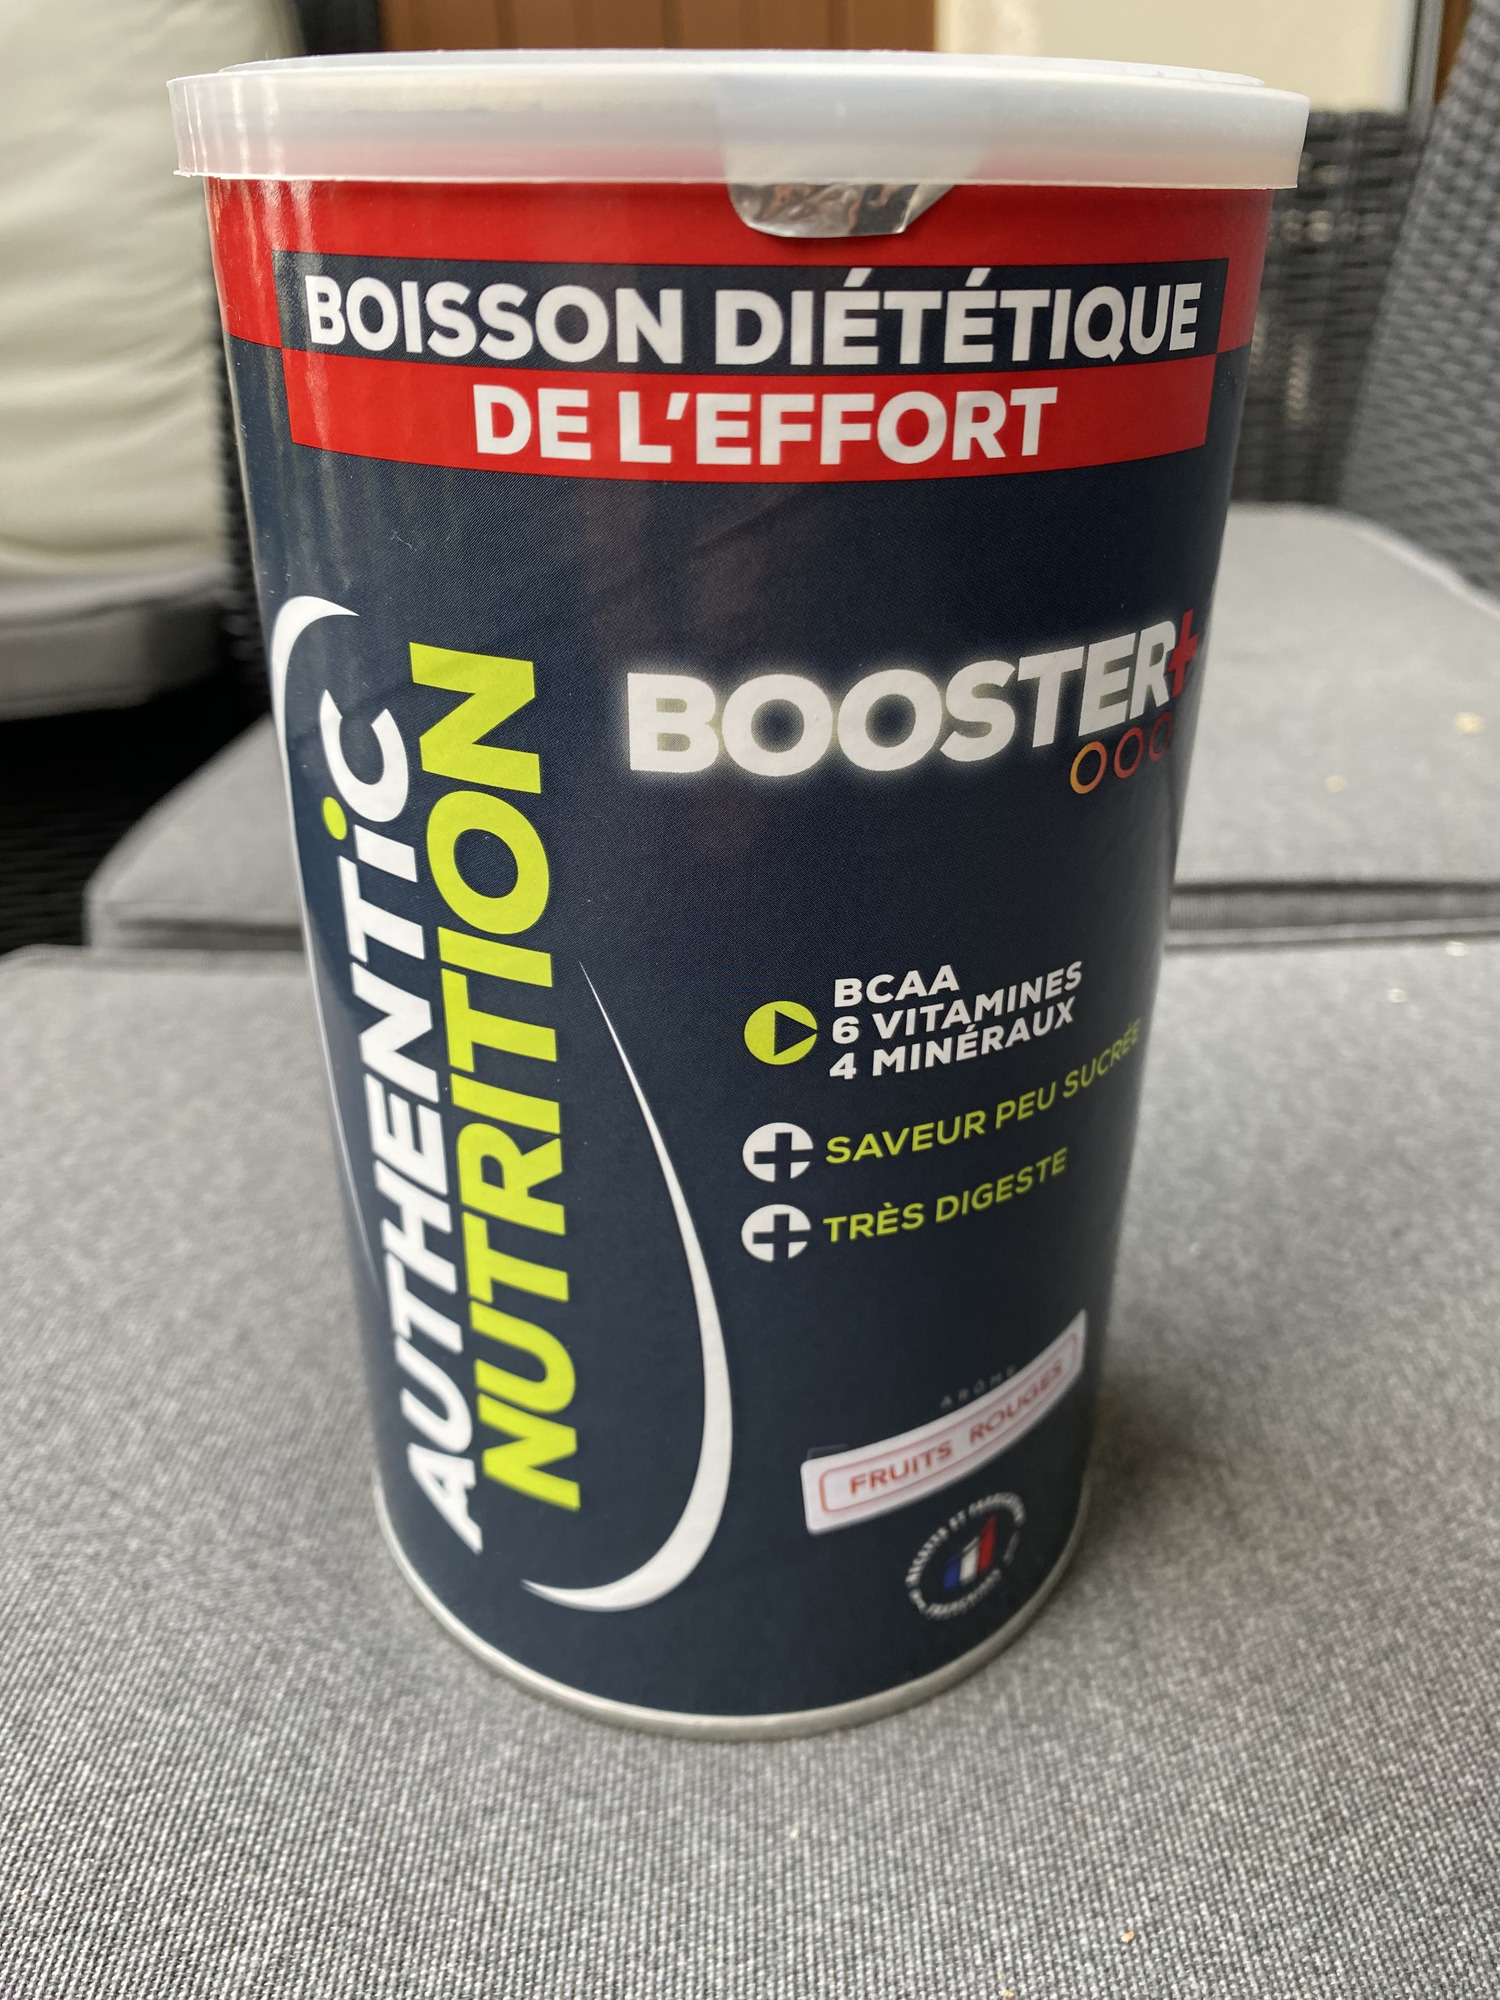 Authentic Nutrition Boisson diététique de l’effort - Booster +